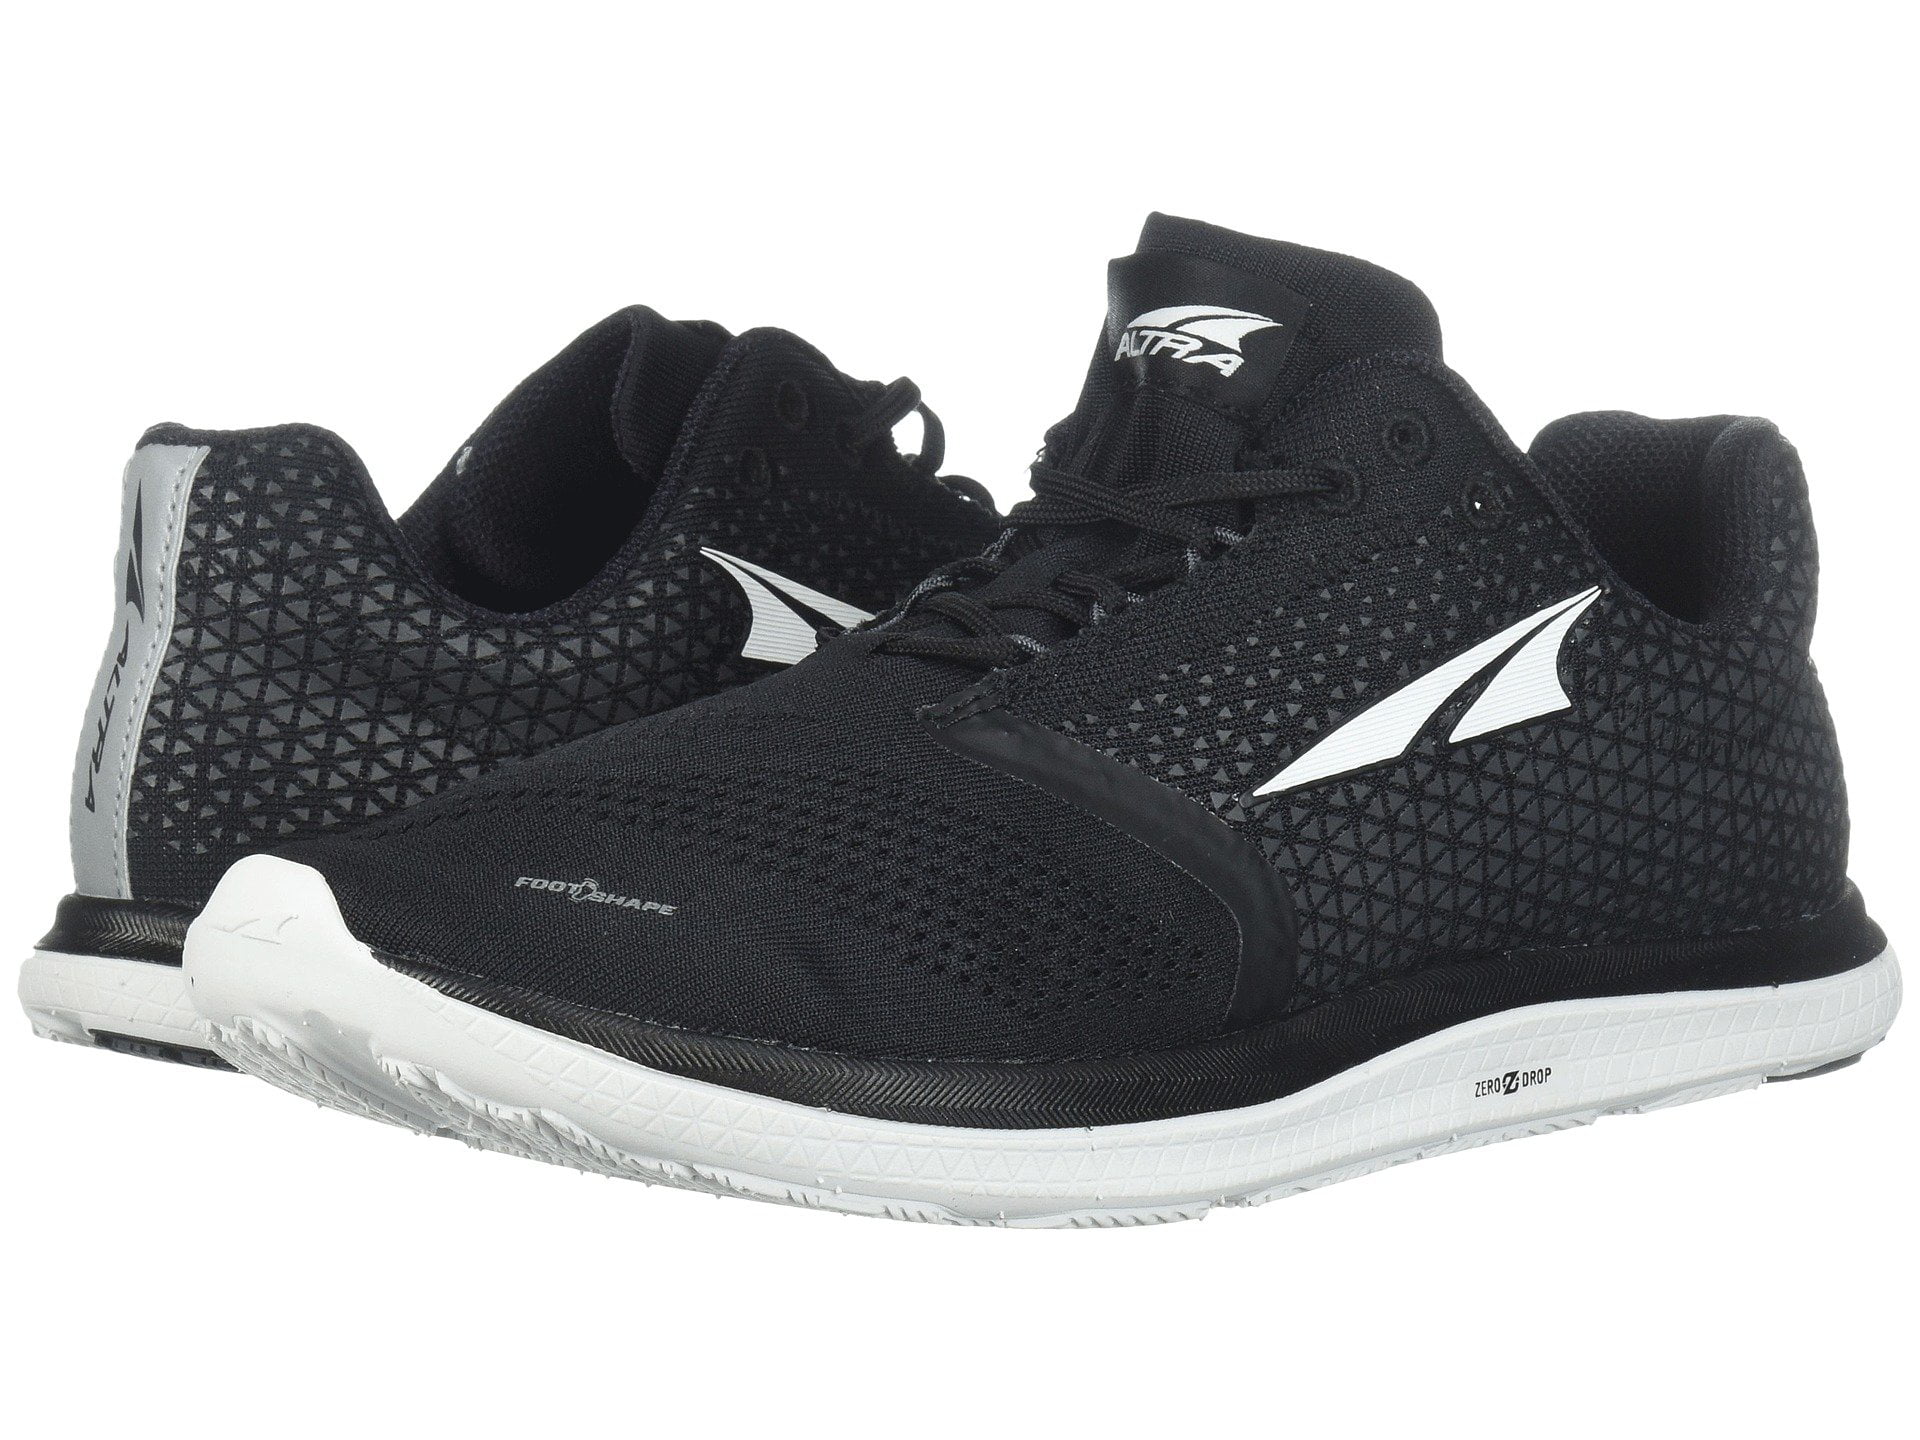 Altra Women's Solstice Zero Drop Comfort Athletic Running Shoes Black ...